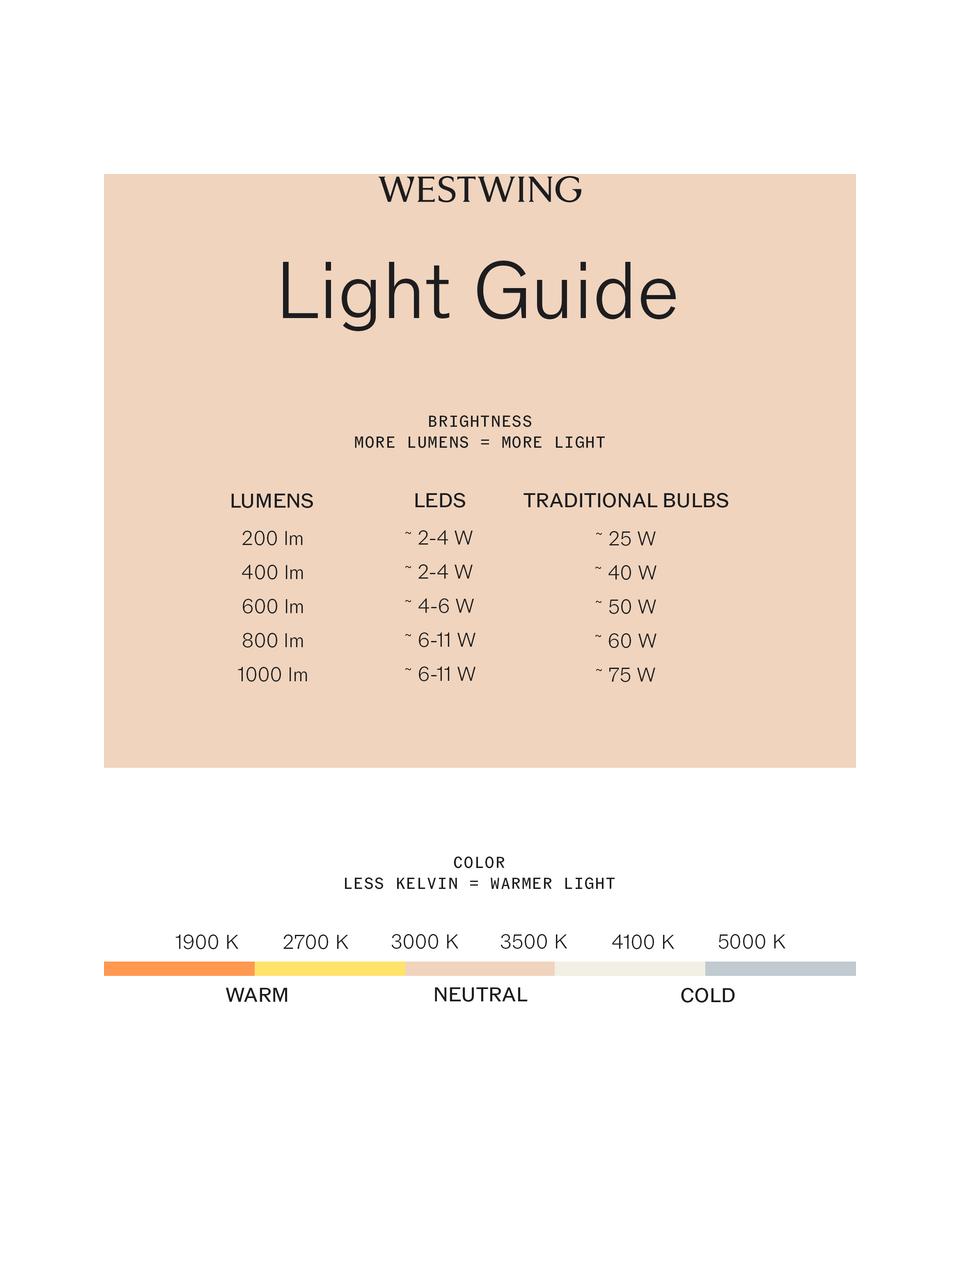 Handgefertigte LED-Tischlampe Equatore, Lampenschirm: Glas, Metall, galvanisier, Transparent, Kupferfarben, Ø 24 x H 43 cm